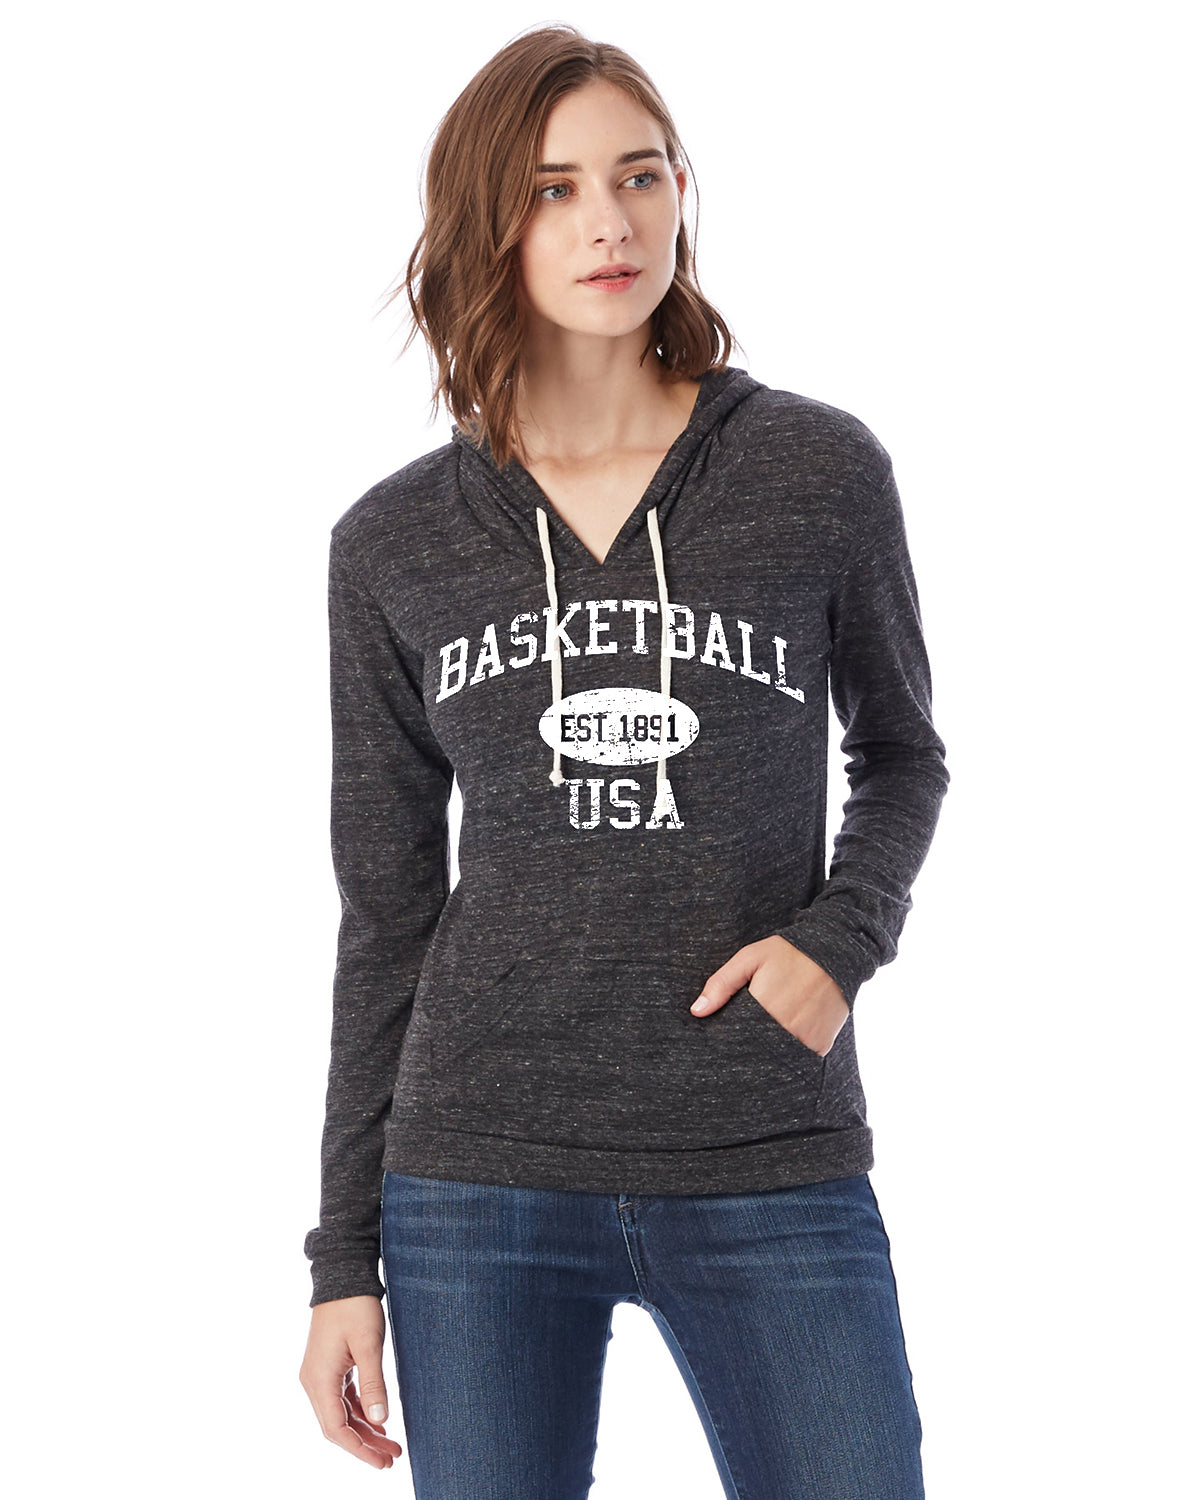 basketball jersey with sweatshirt